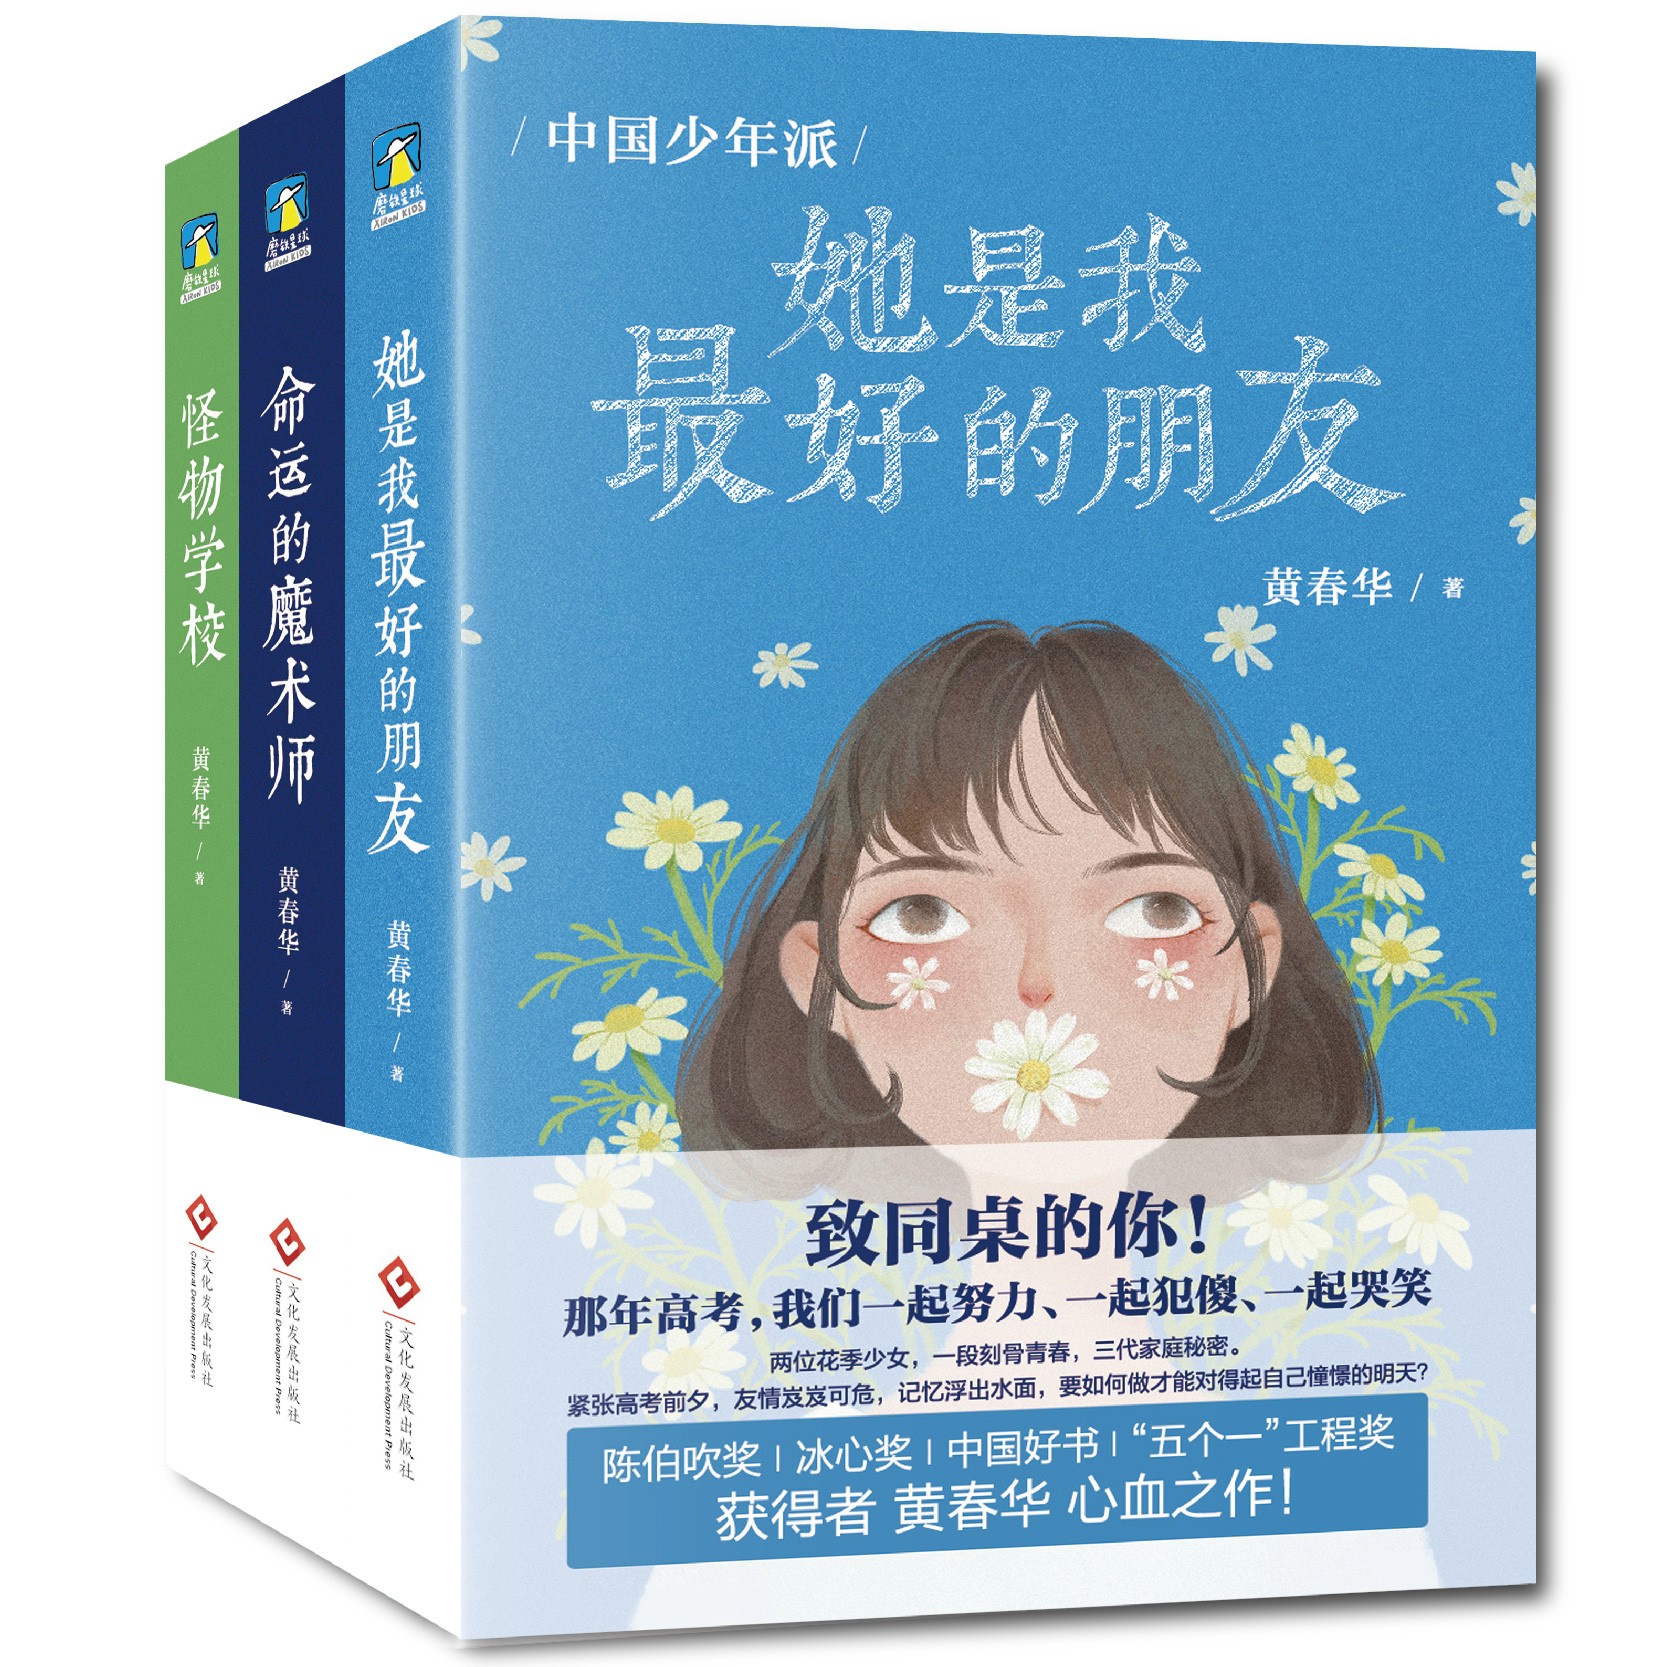  磨铁新书“中国少年派三部曲”懵懂的年纪里的灯塔